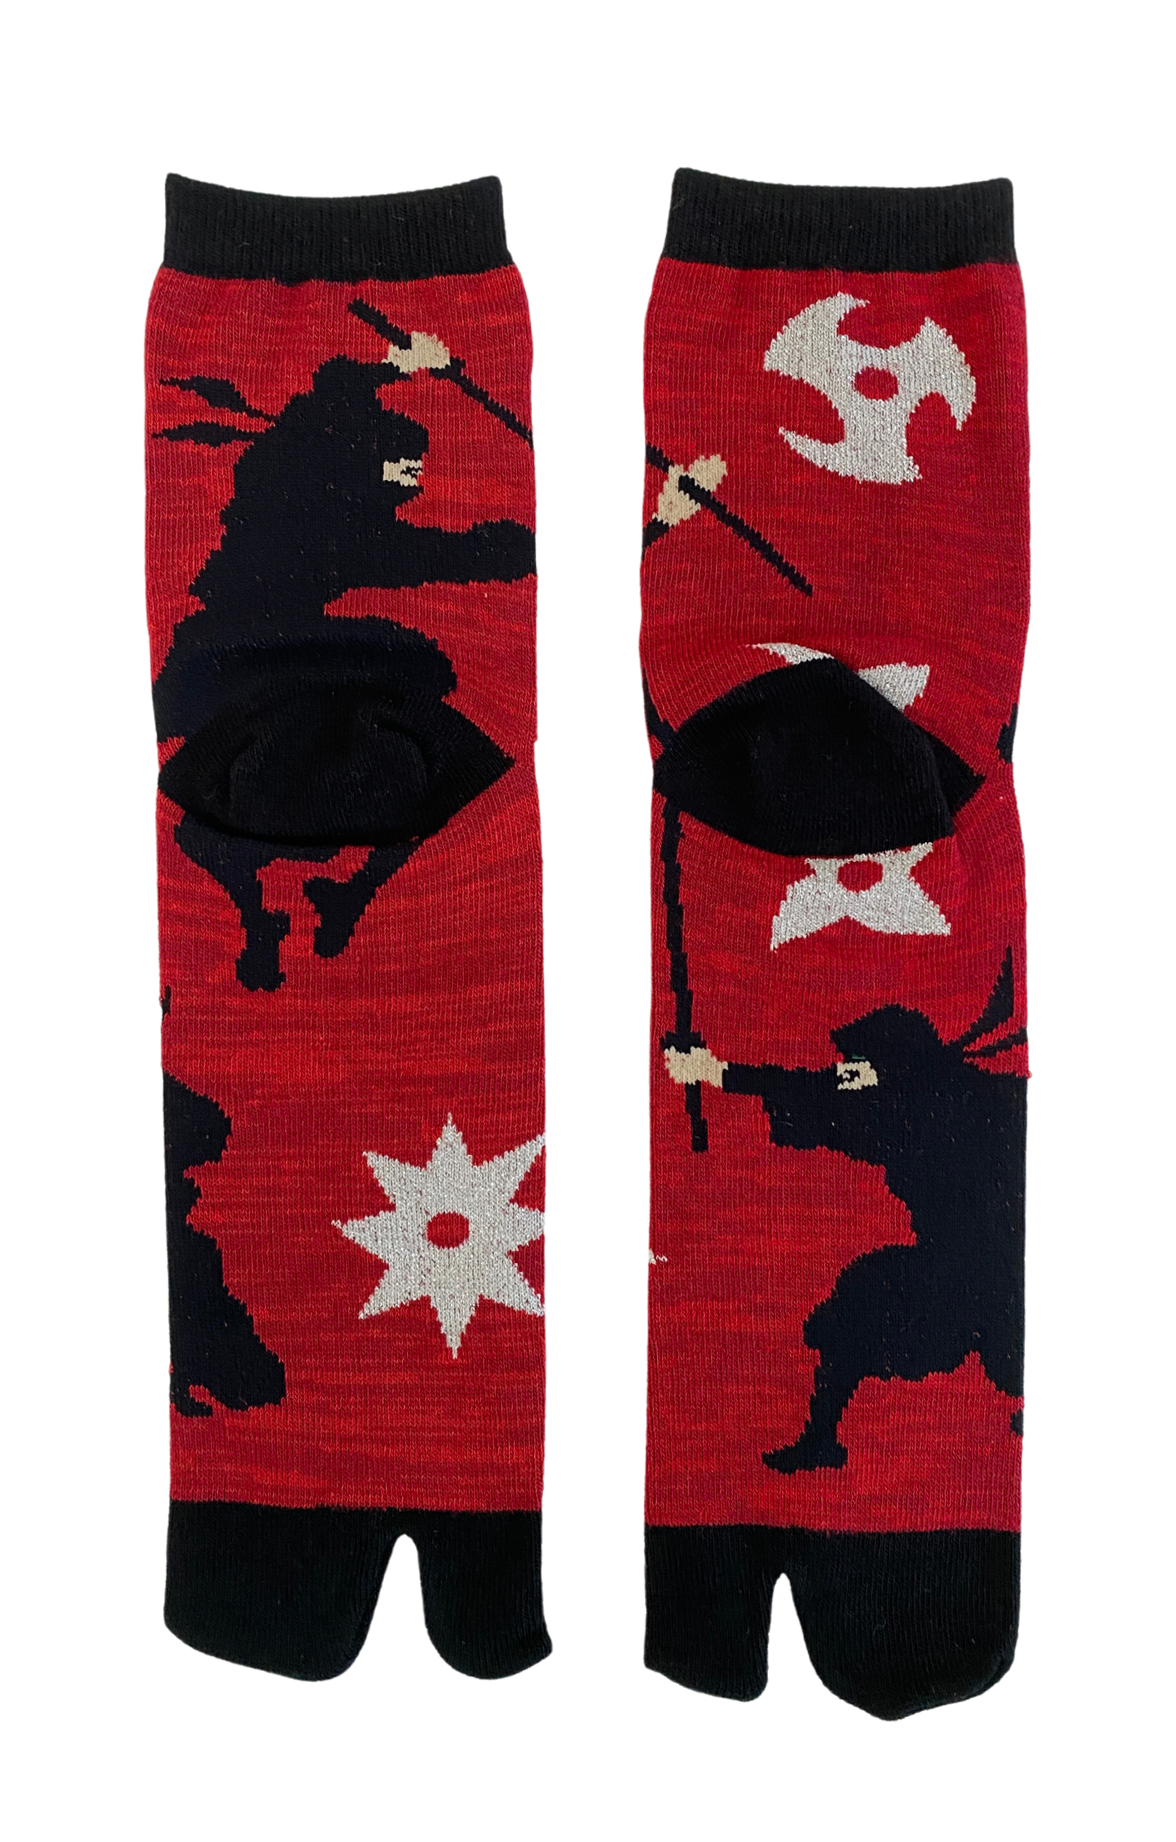 5391 ninja tabi socks red made in japan